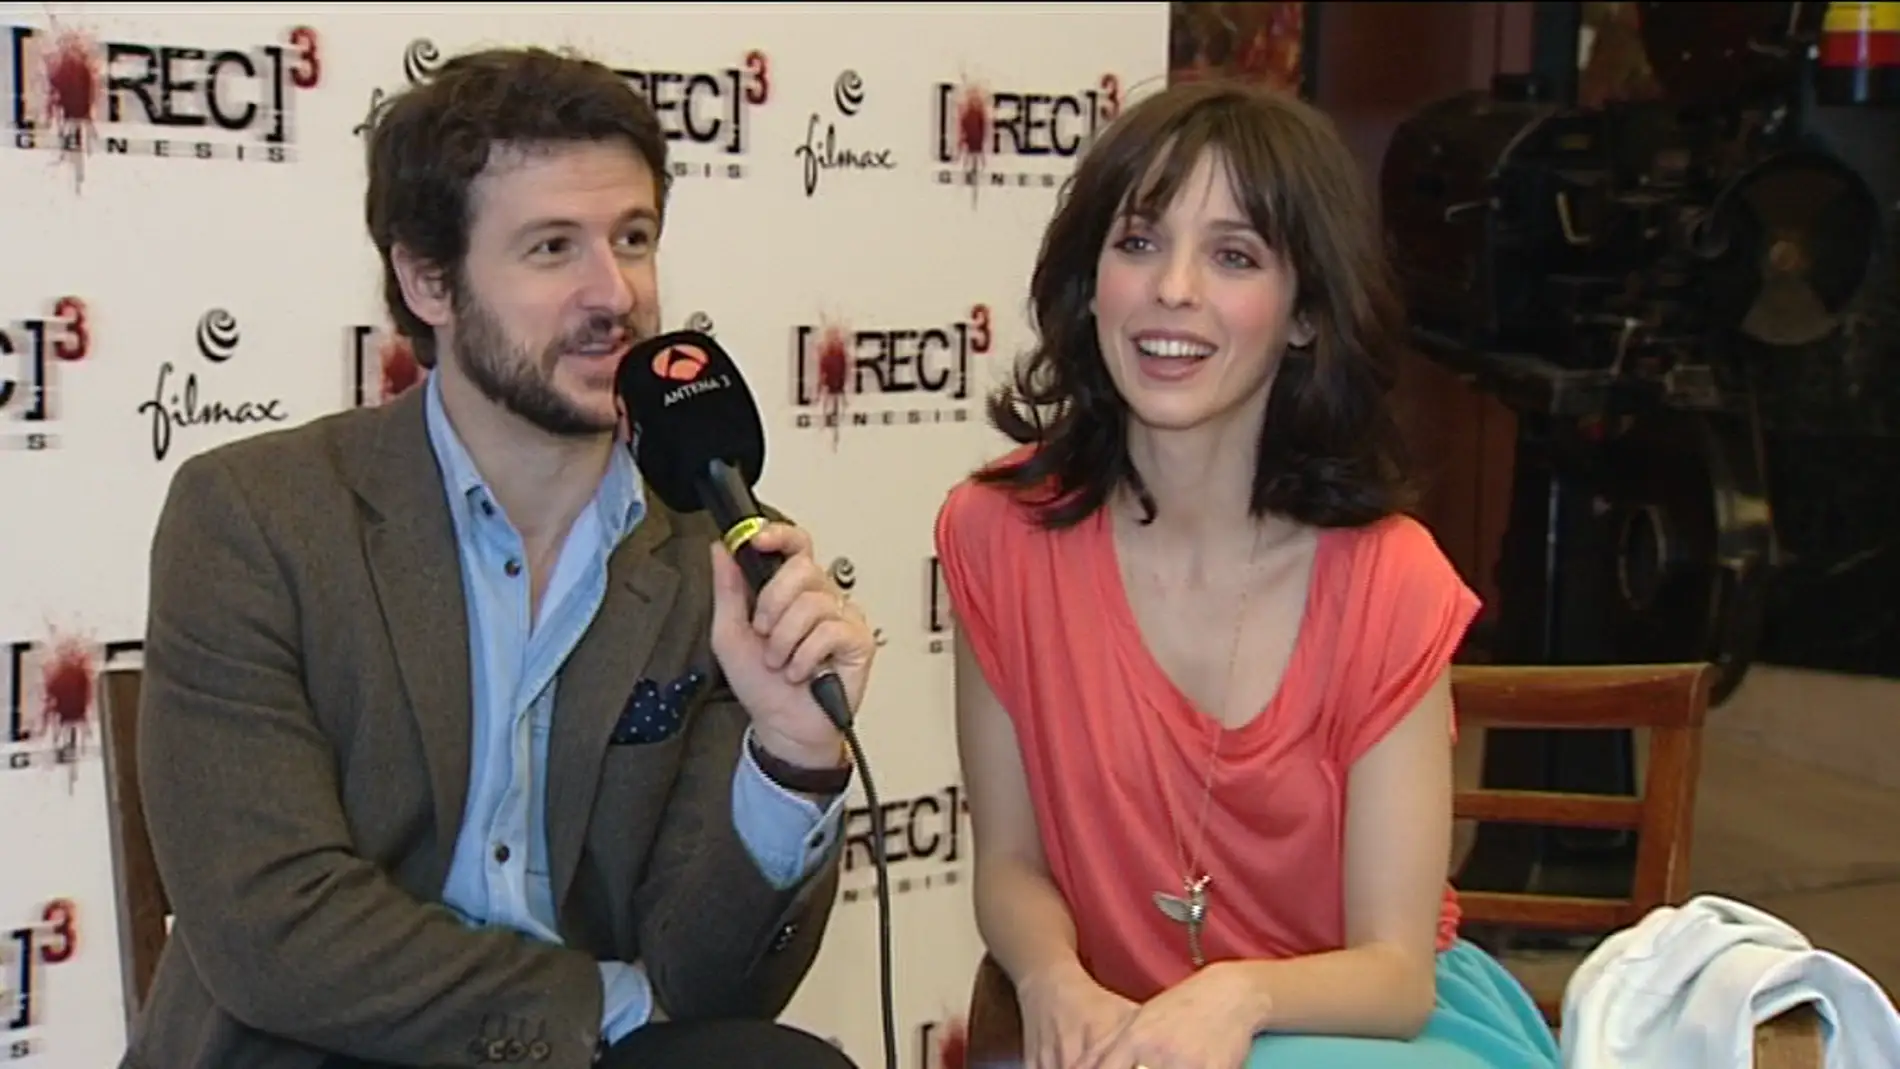 Diego Martín y Leticia Dolera protagonizan 'Rec 3'